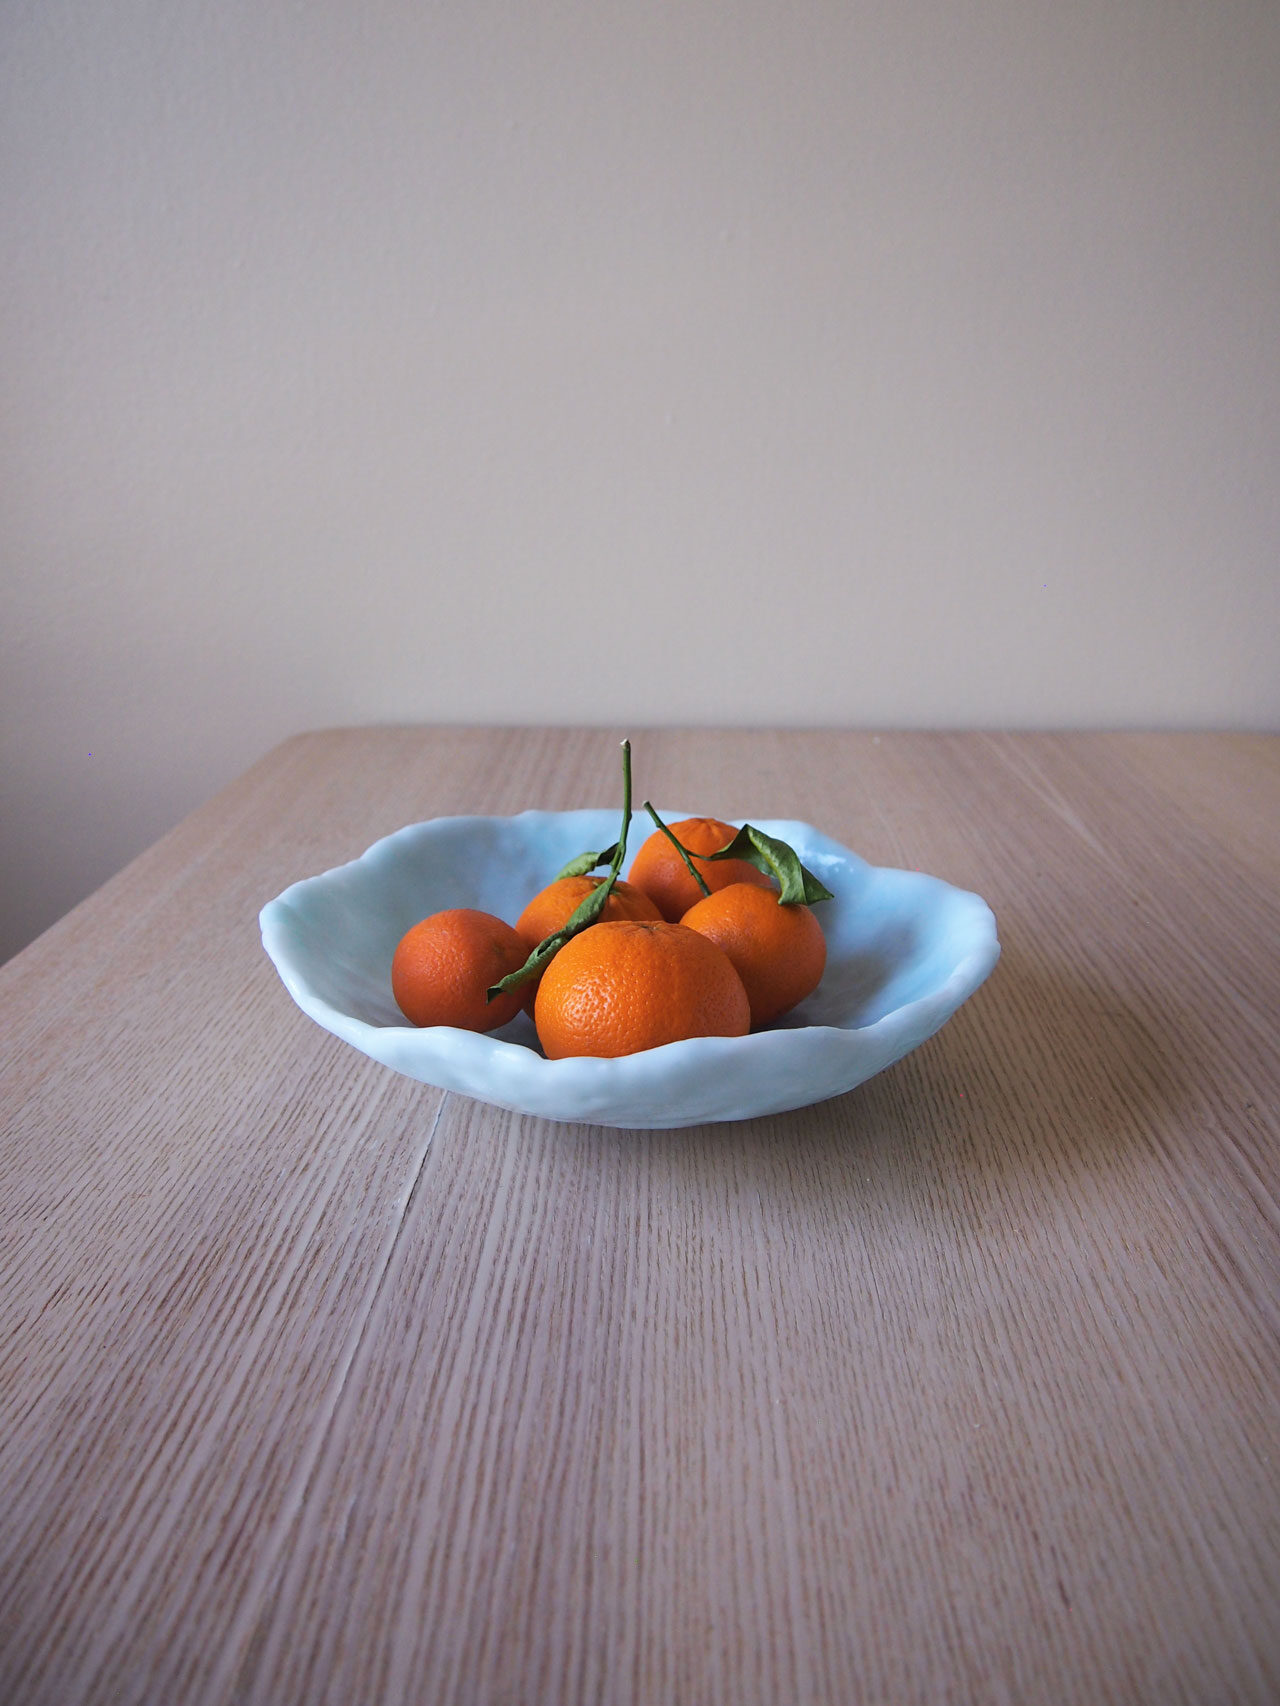 DIY translucent fruit bowl designed by Aandersson